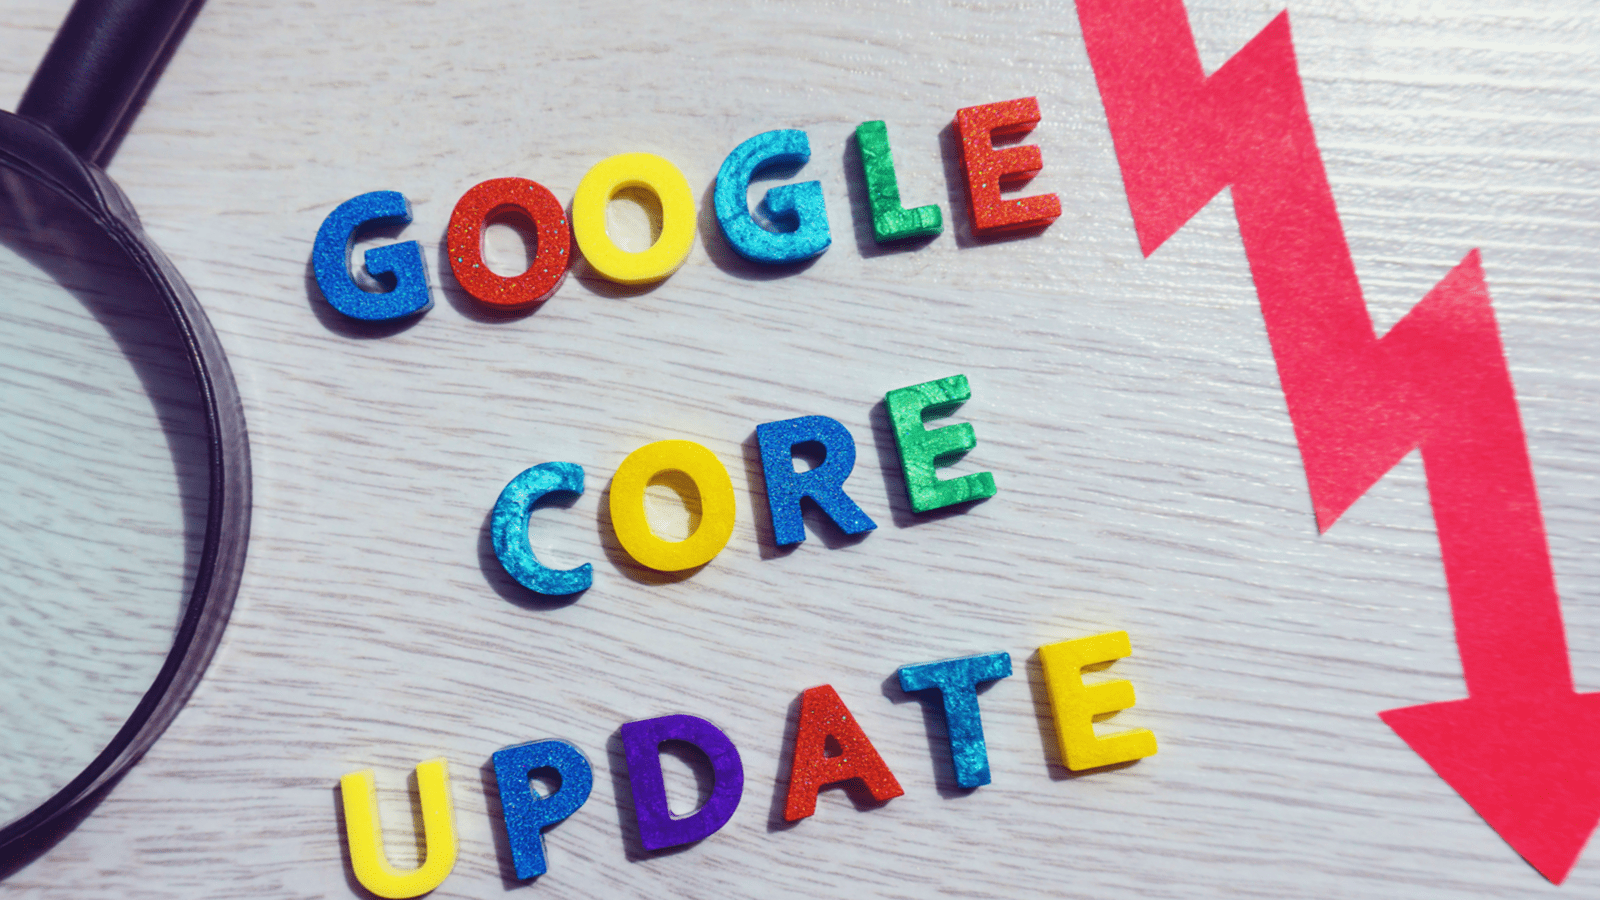 Analyzing Google's may 2020 core update